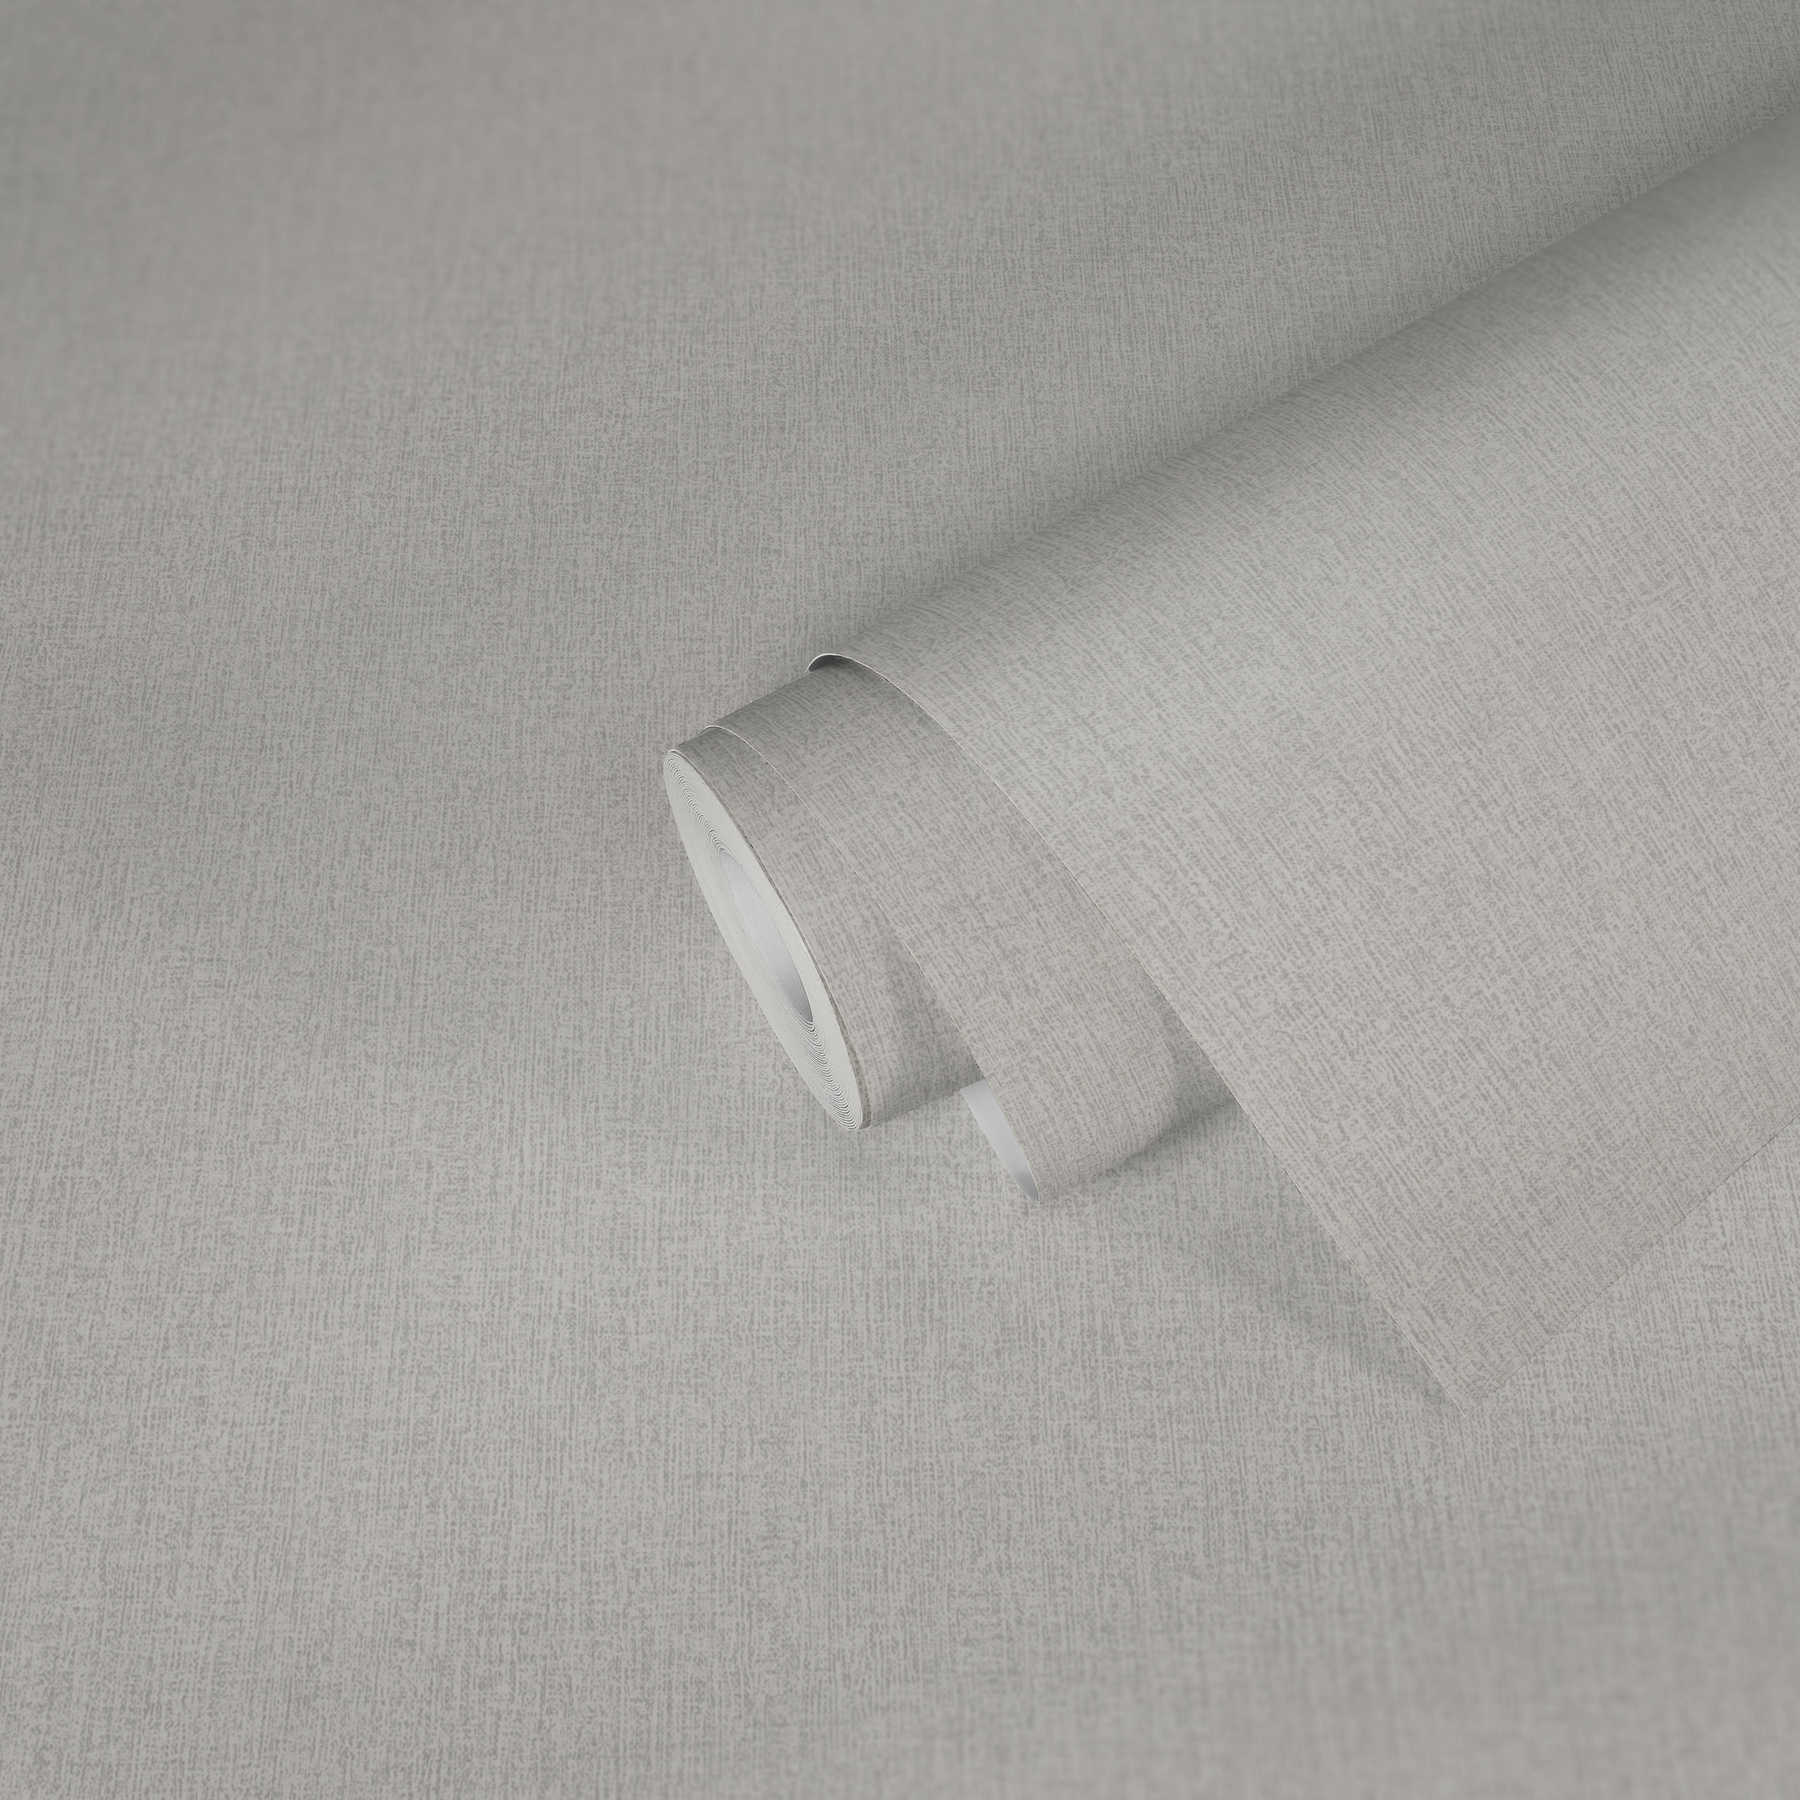             Papier peint aspect lin, uni & chiné - blanc
        